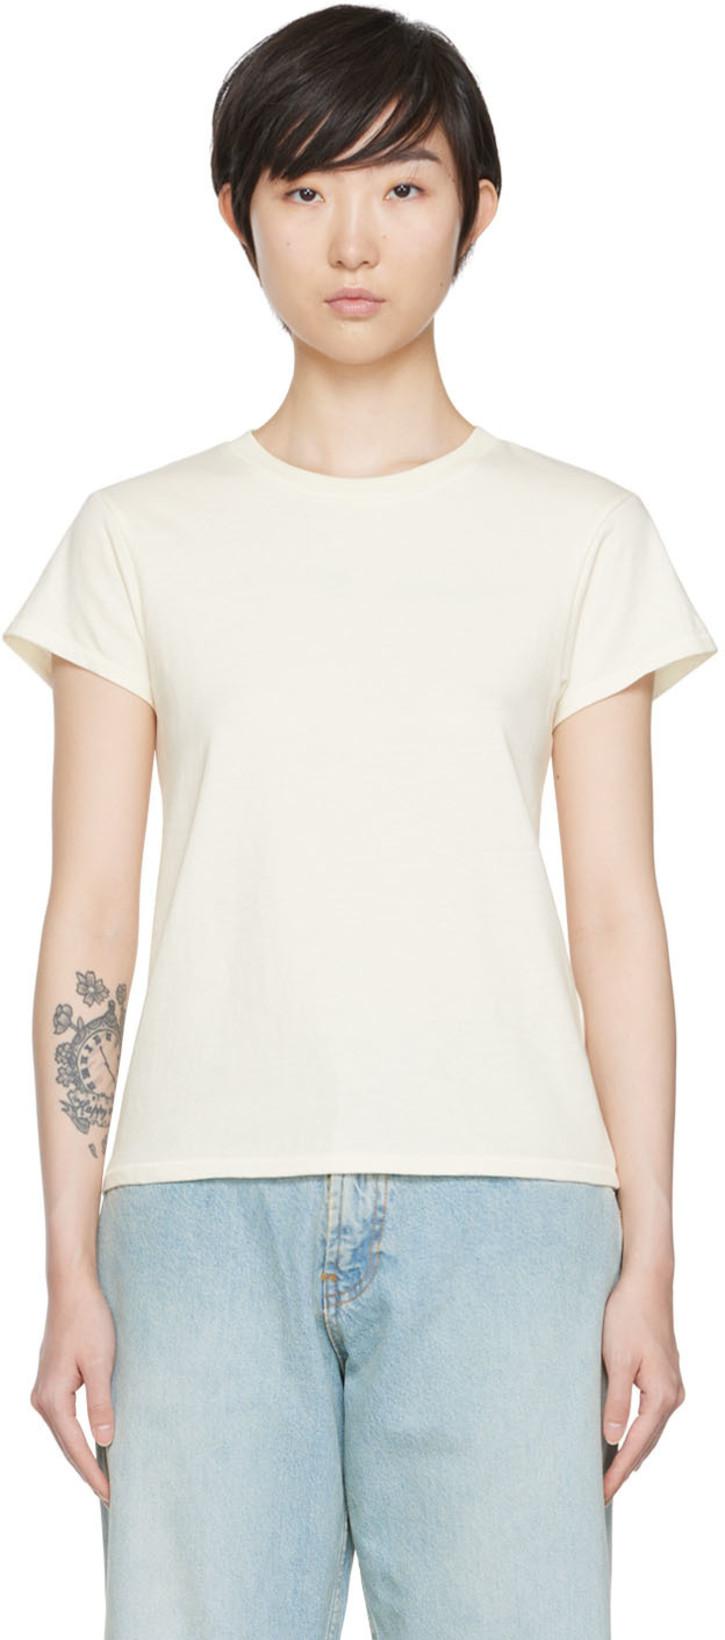 Off-White Mini Boy T-Shirt by 6397